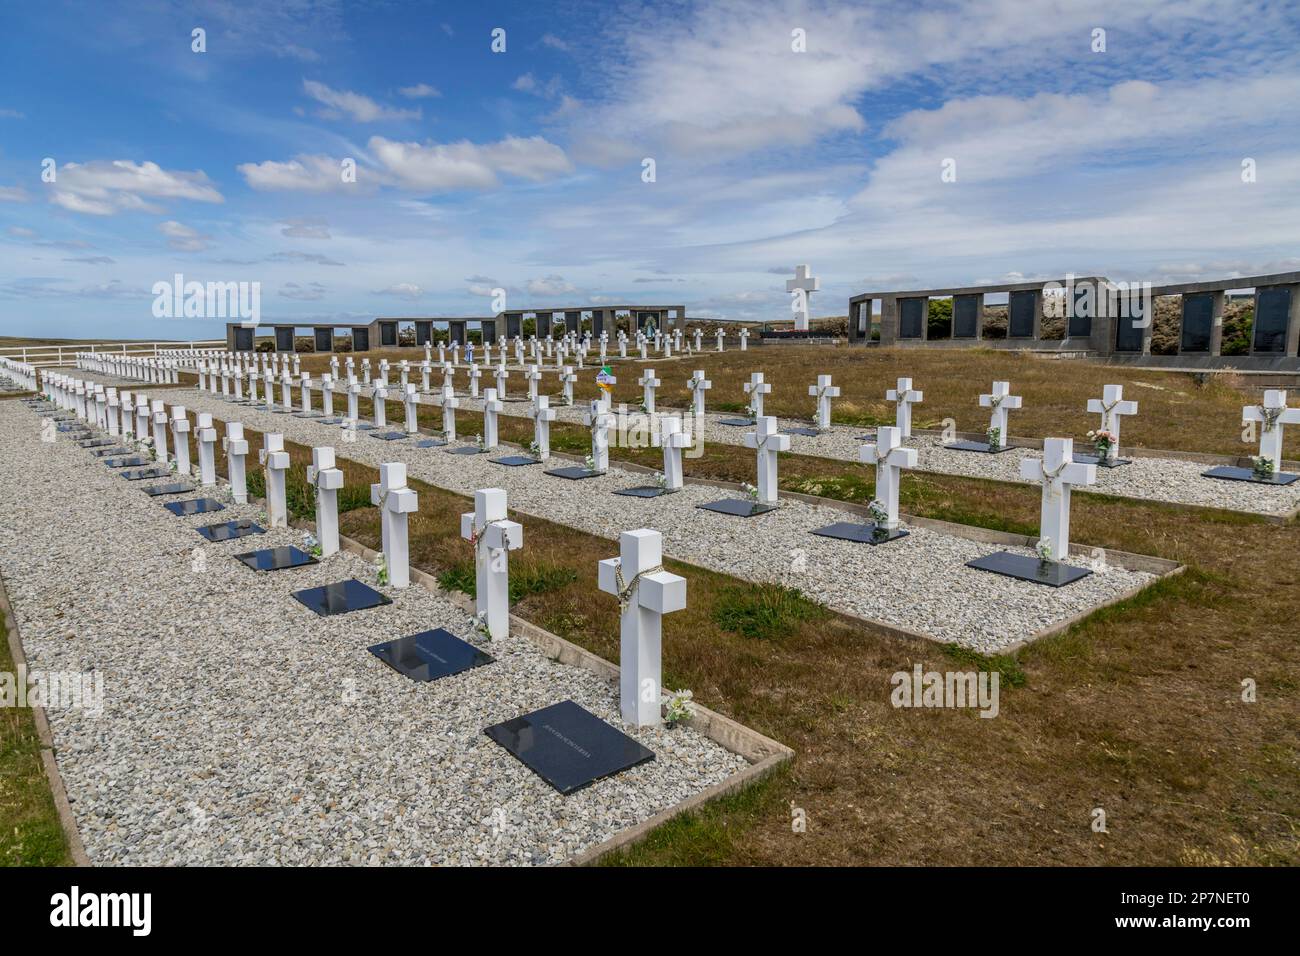 El Cementerio Militar Argentino cerca de Darwin en las Islas Malvinas, tiene los restos de soldados asesinados durante la guerra de las malvinas de 1982. Foto de stock